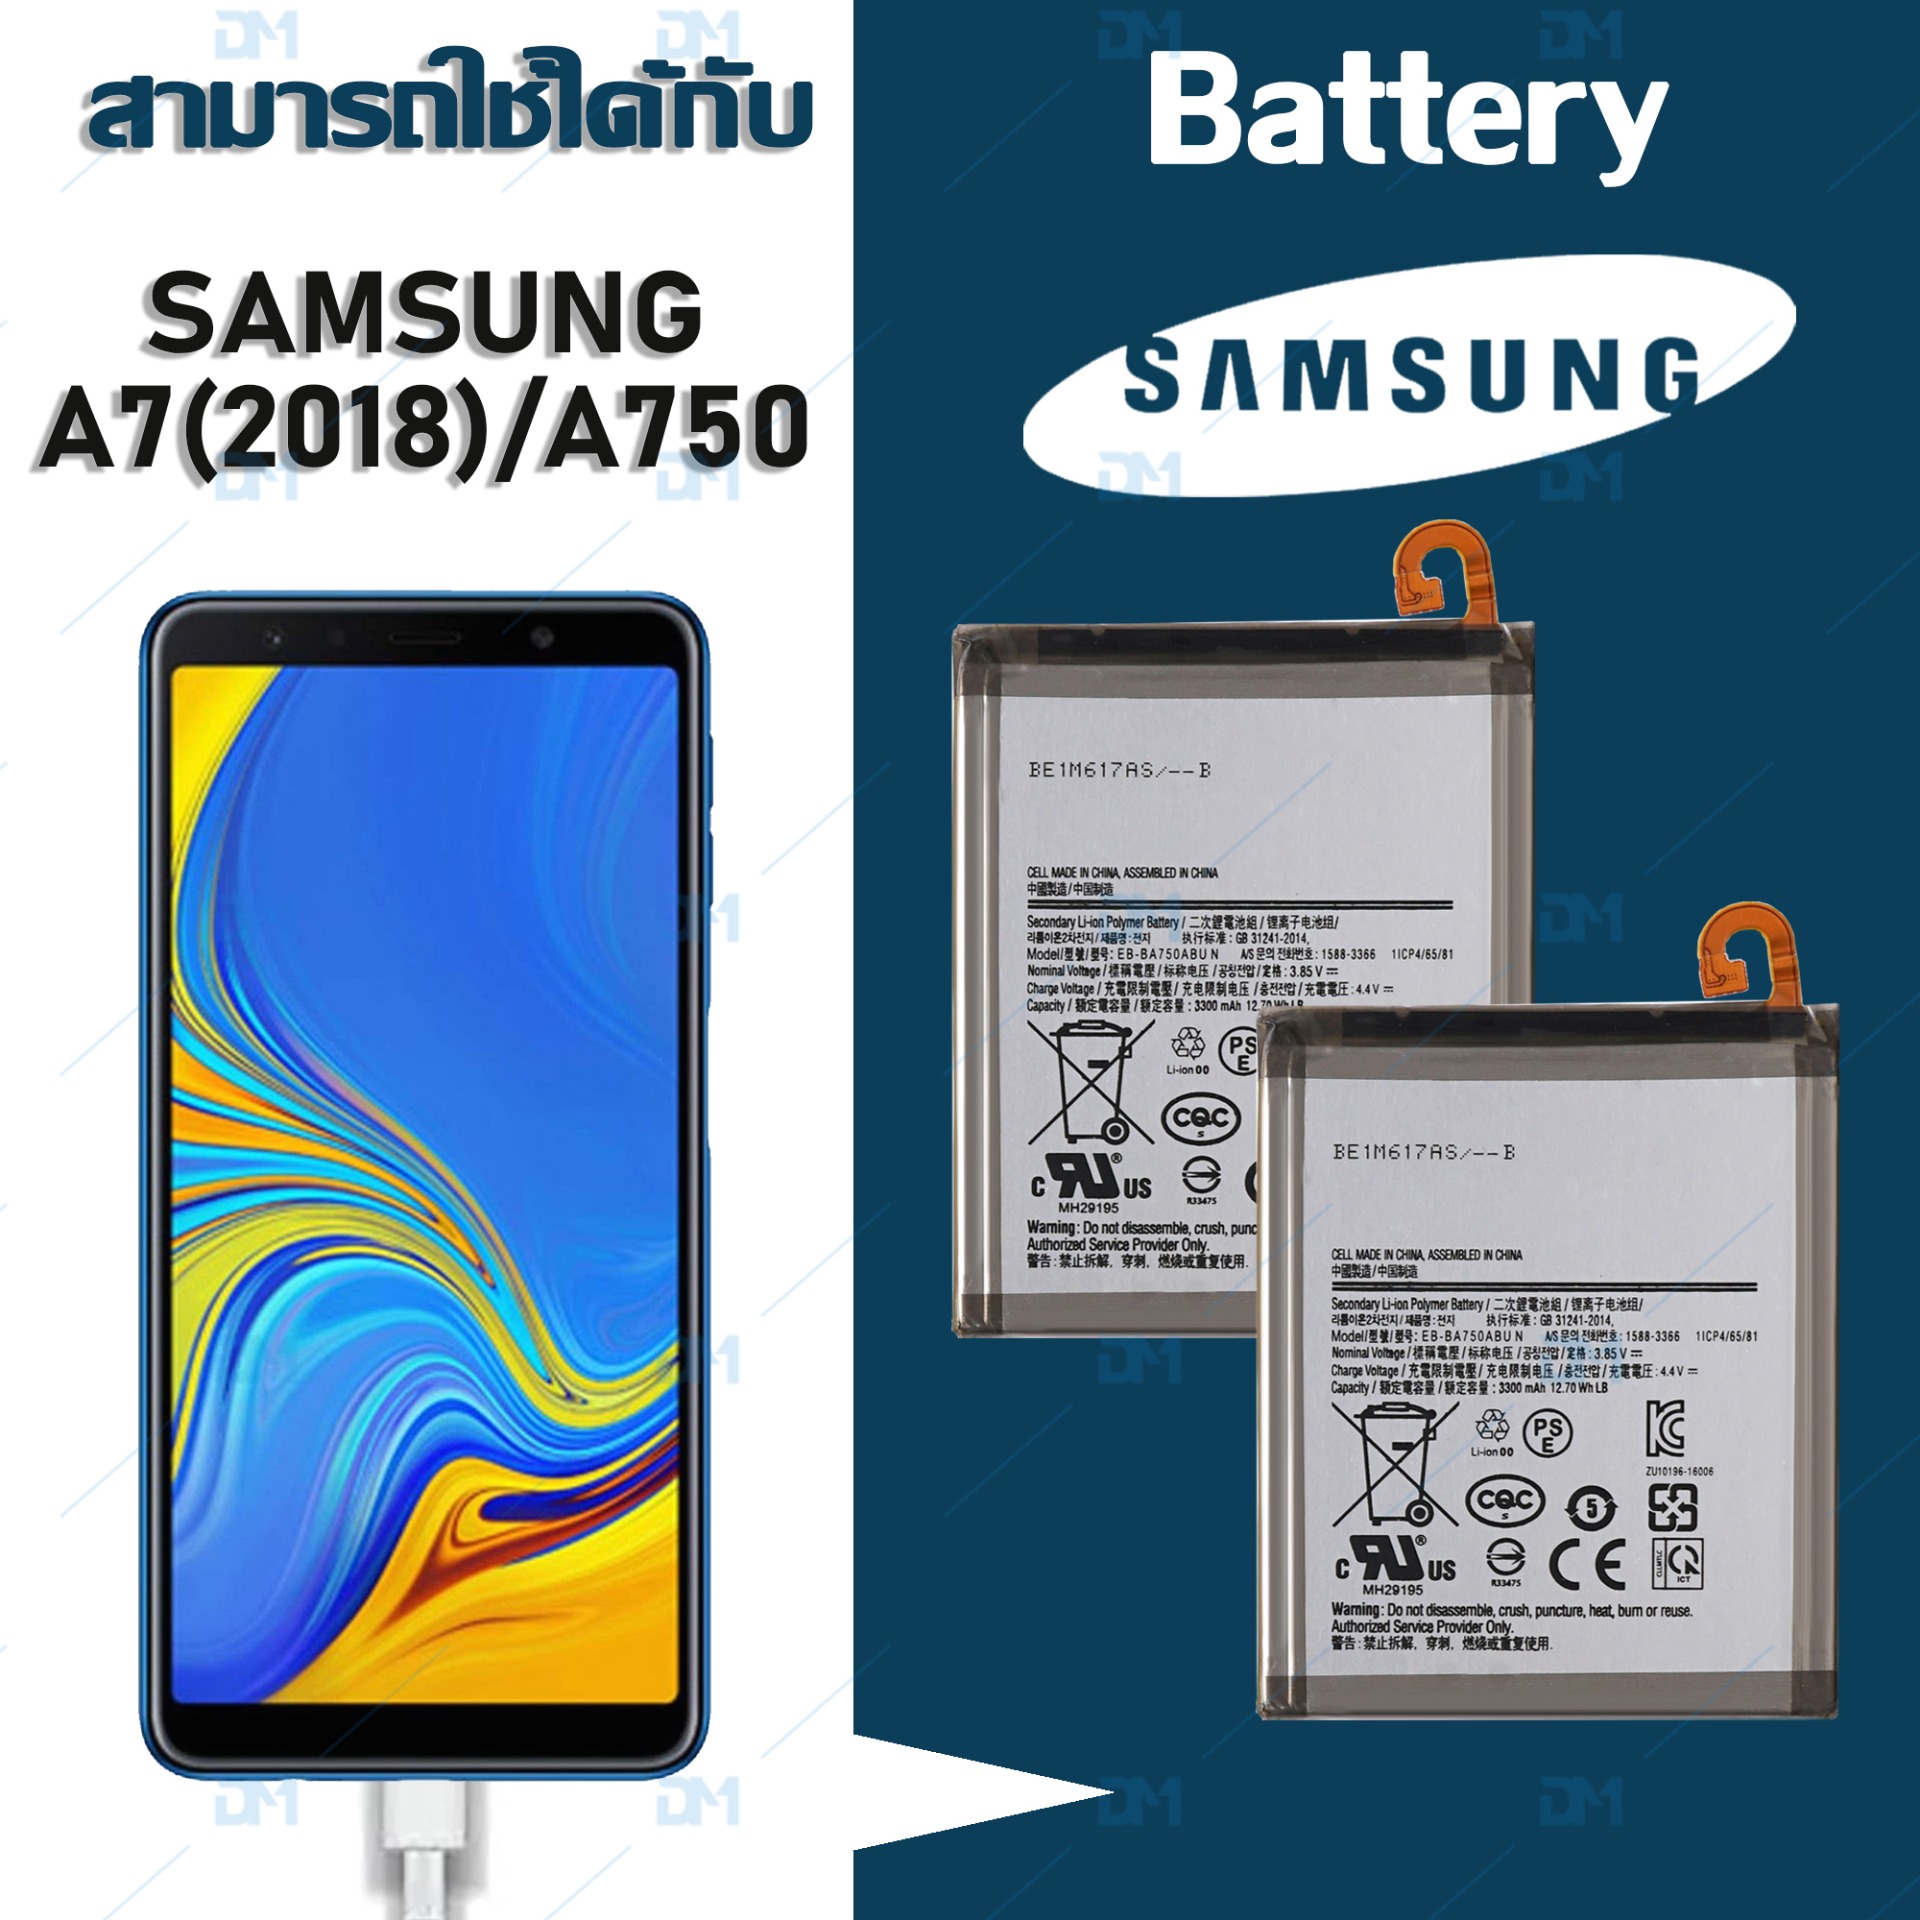 แบตเตอรี่ Samsung A750/A7(2018) Battery แบต A750/A10 มีประกัน 6 เดือน